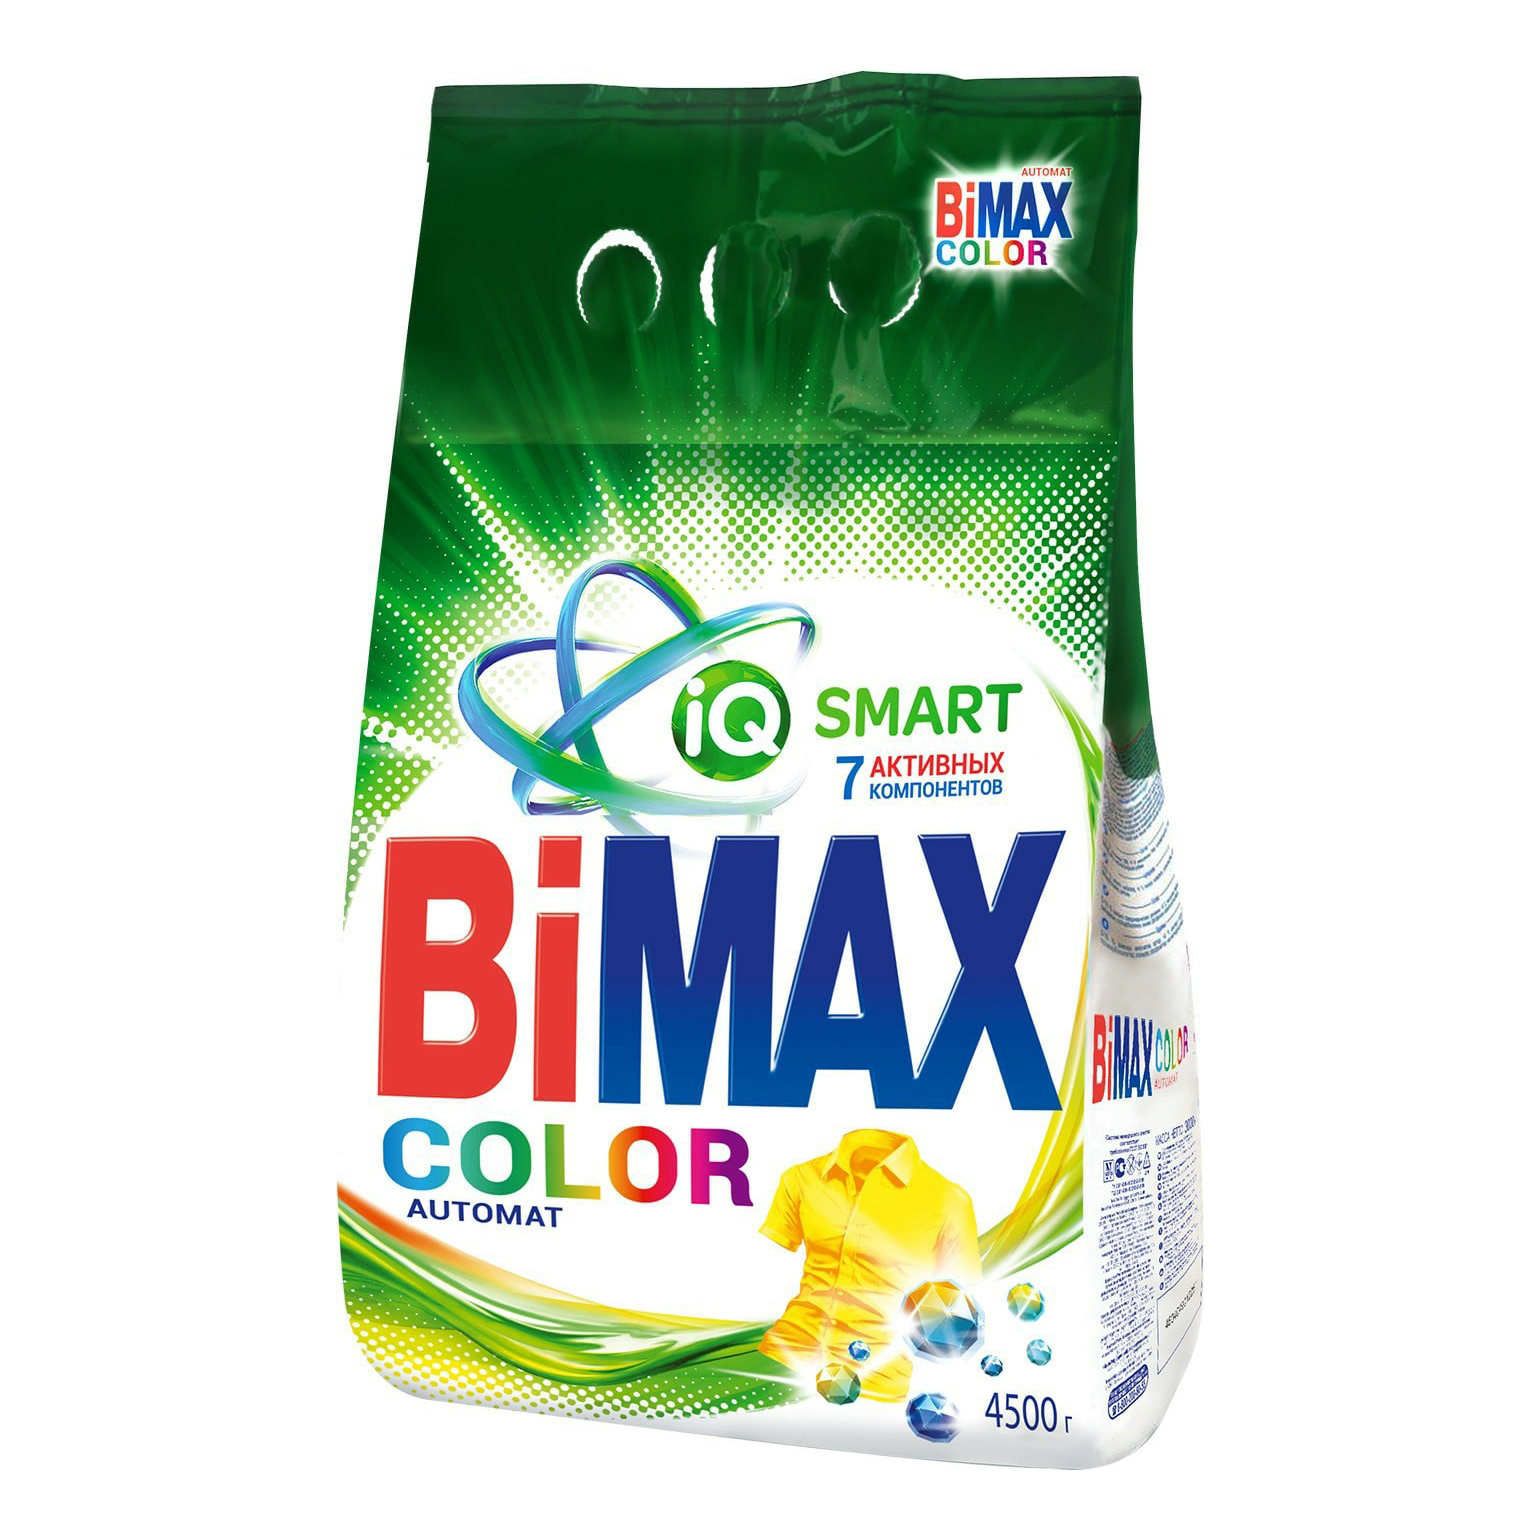 100 пятен. Стиральный порошок BIMAX Color автомат 6 кг. Порошок стиральный БИМАКС автомат 100 пятен, 400г. Порошок BIMAX автомат 100 пятен 3кг. Порошок БИМАКС колор.